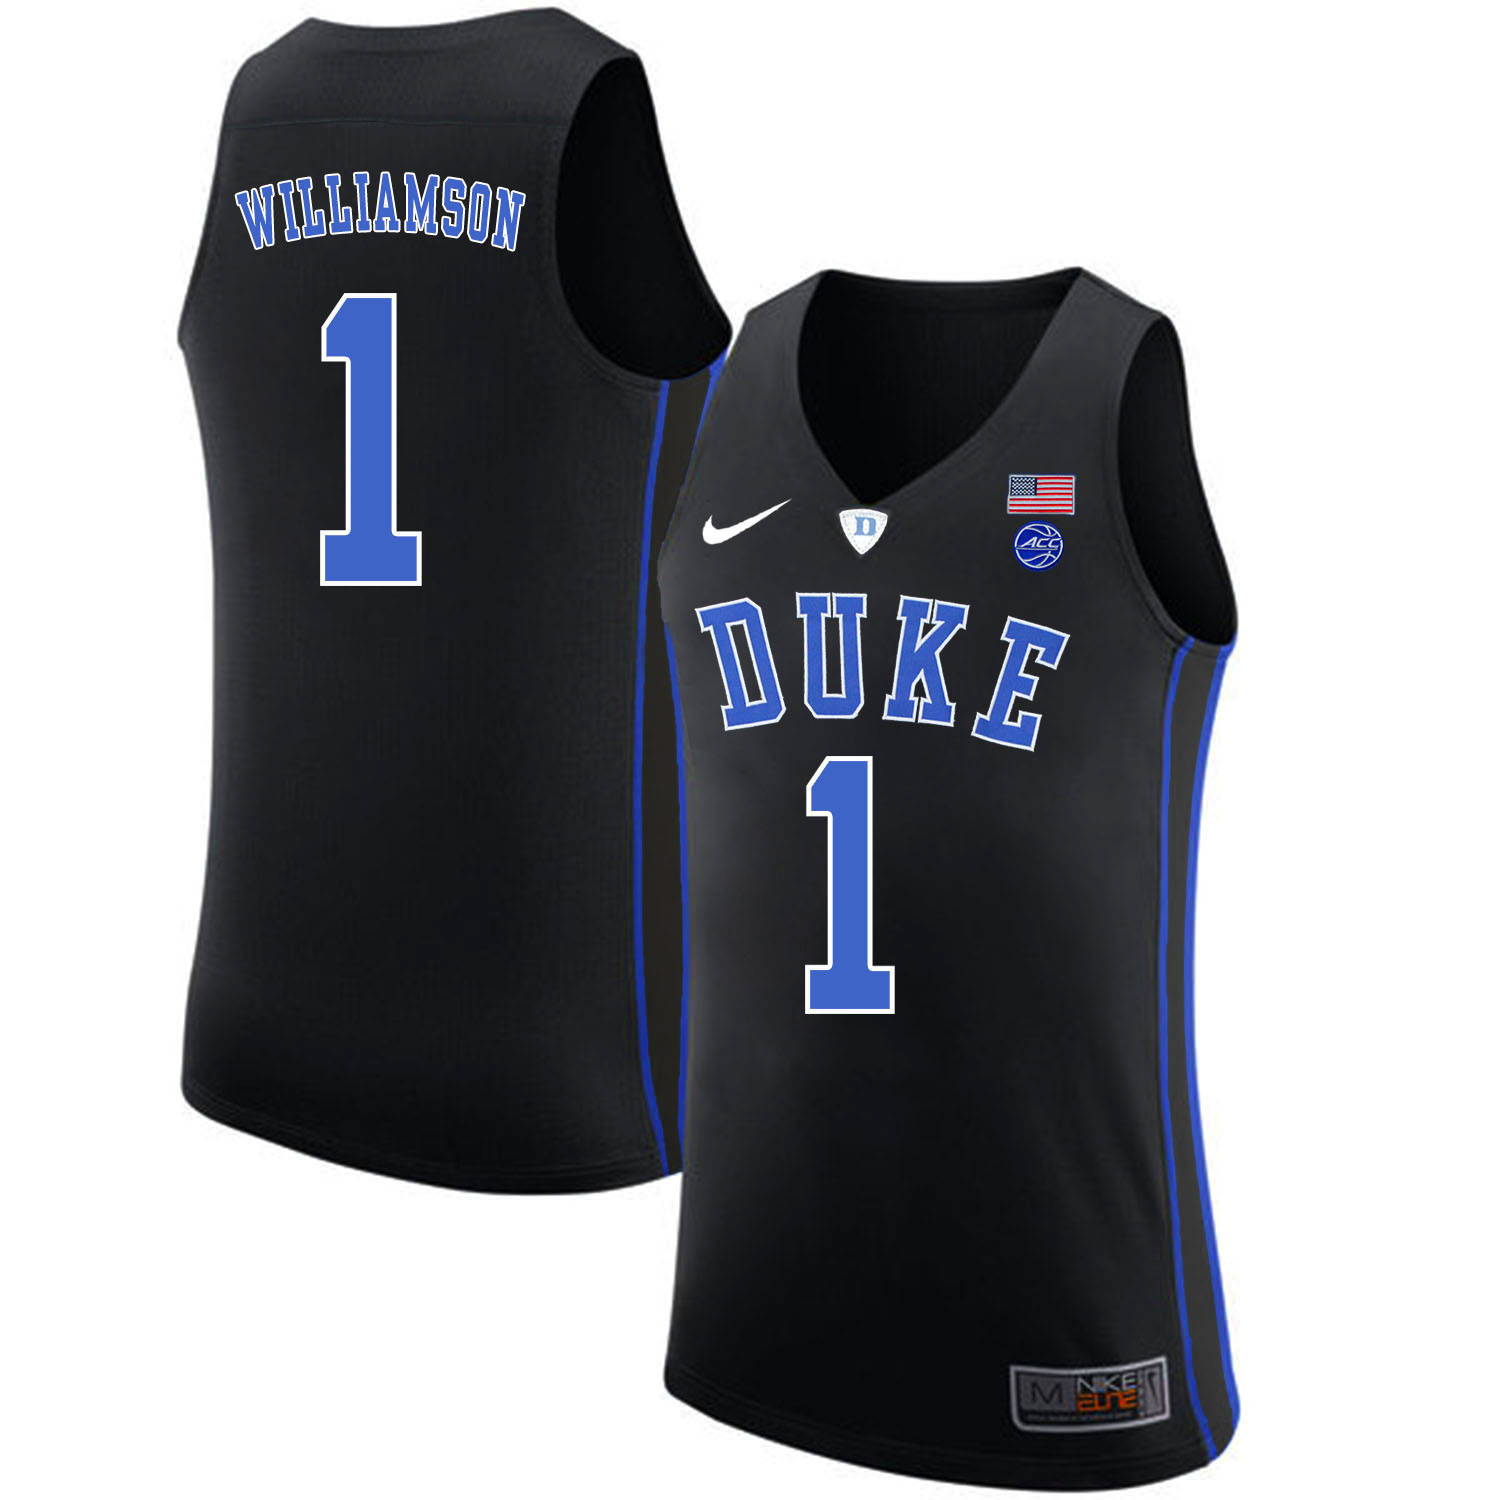 Duke Blue Devils 1 Zion Williamson Black Nike College Basketabll Jersey